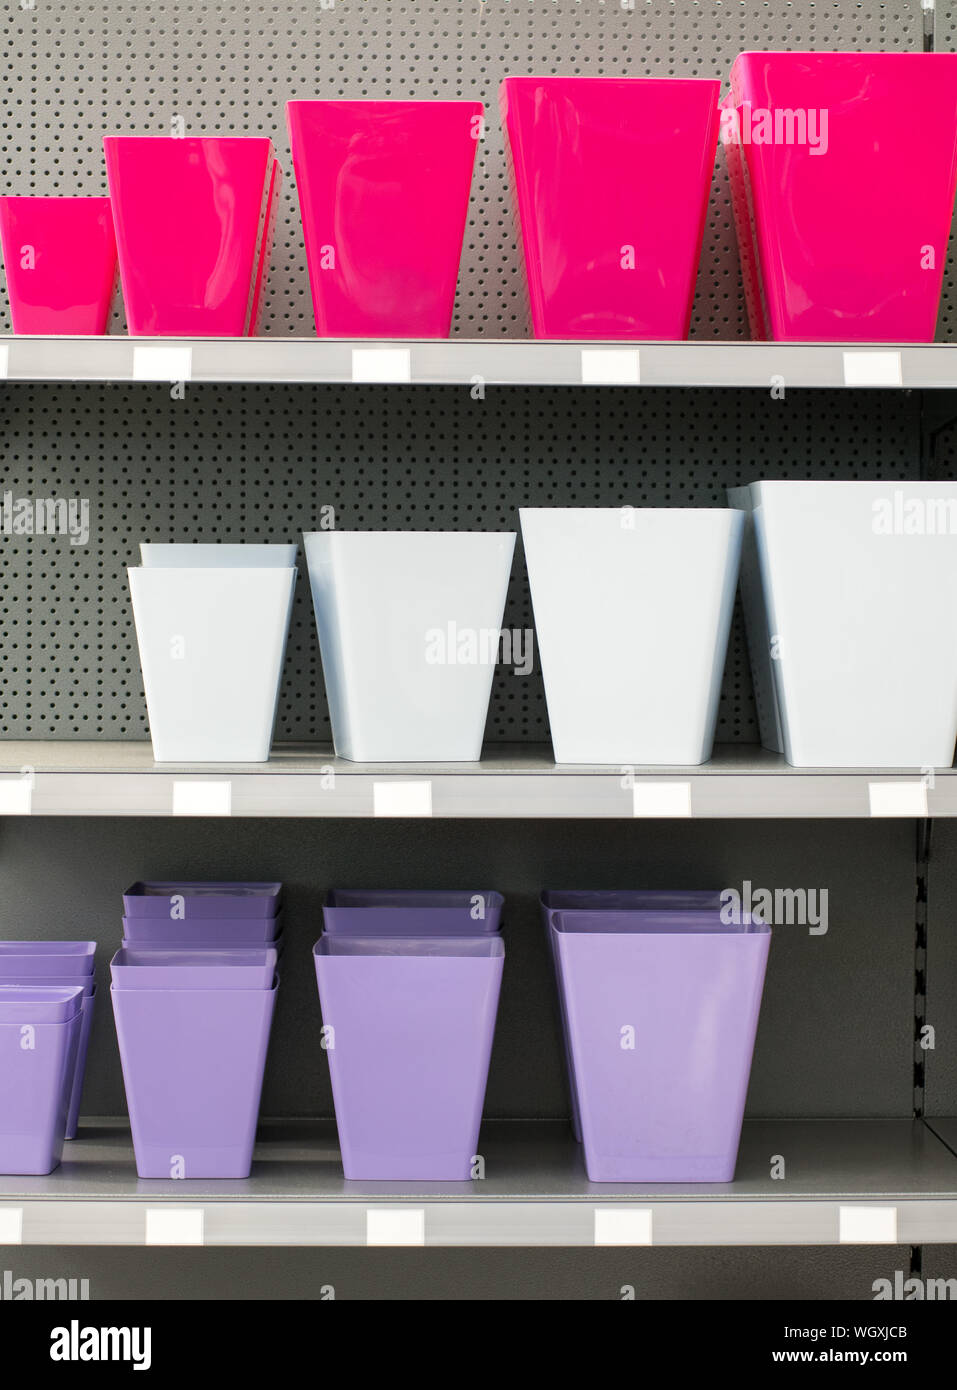 Filas de coloridas macetas dispuestos en orden ascendente de diferentes tamaños en estantes en un vivero tienda con magenta, blanco violeta Foto de stock